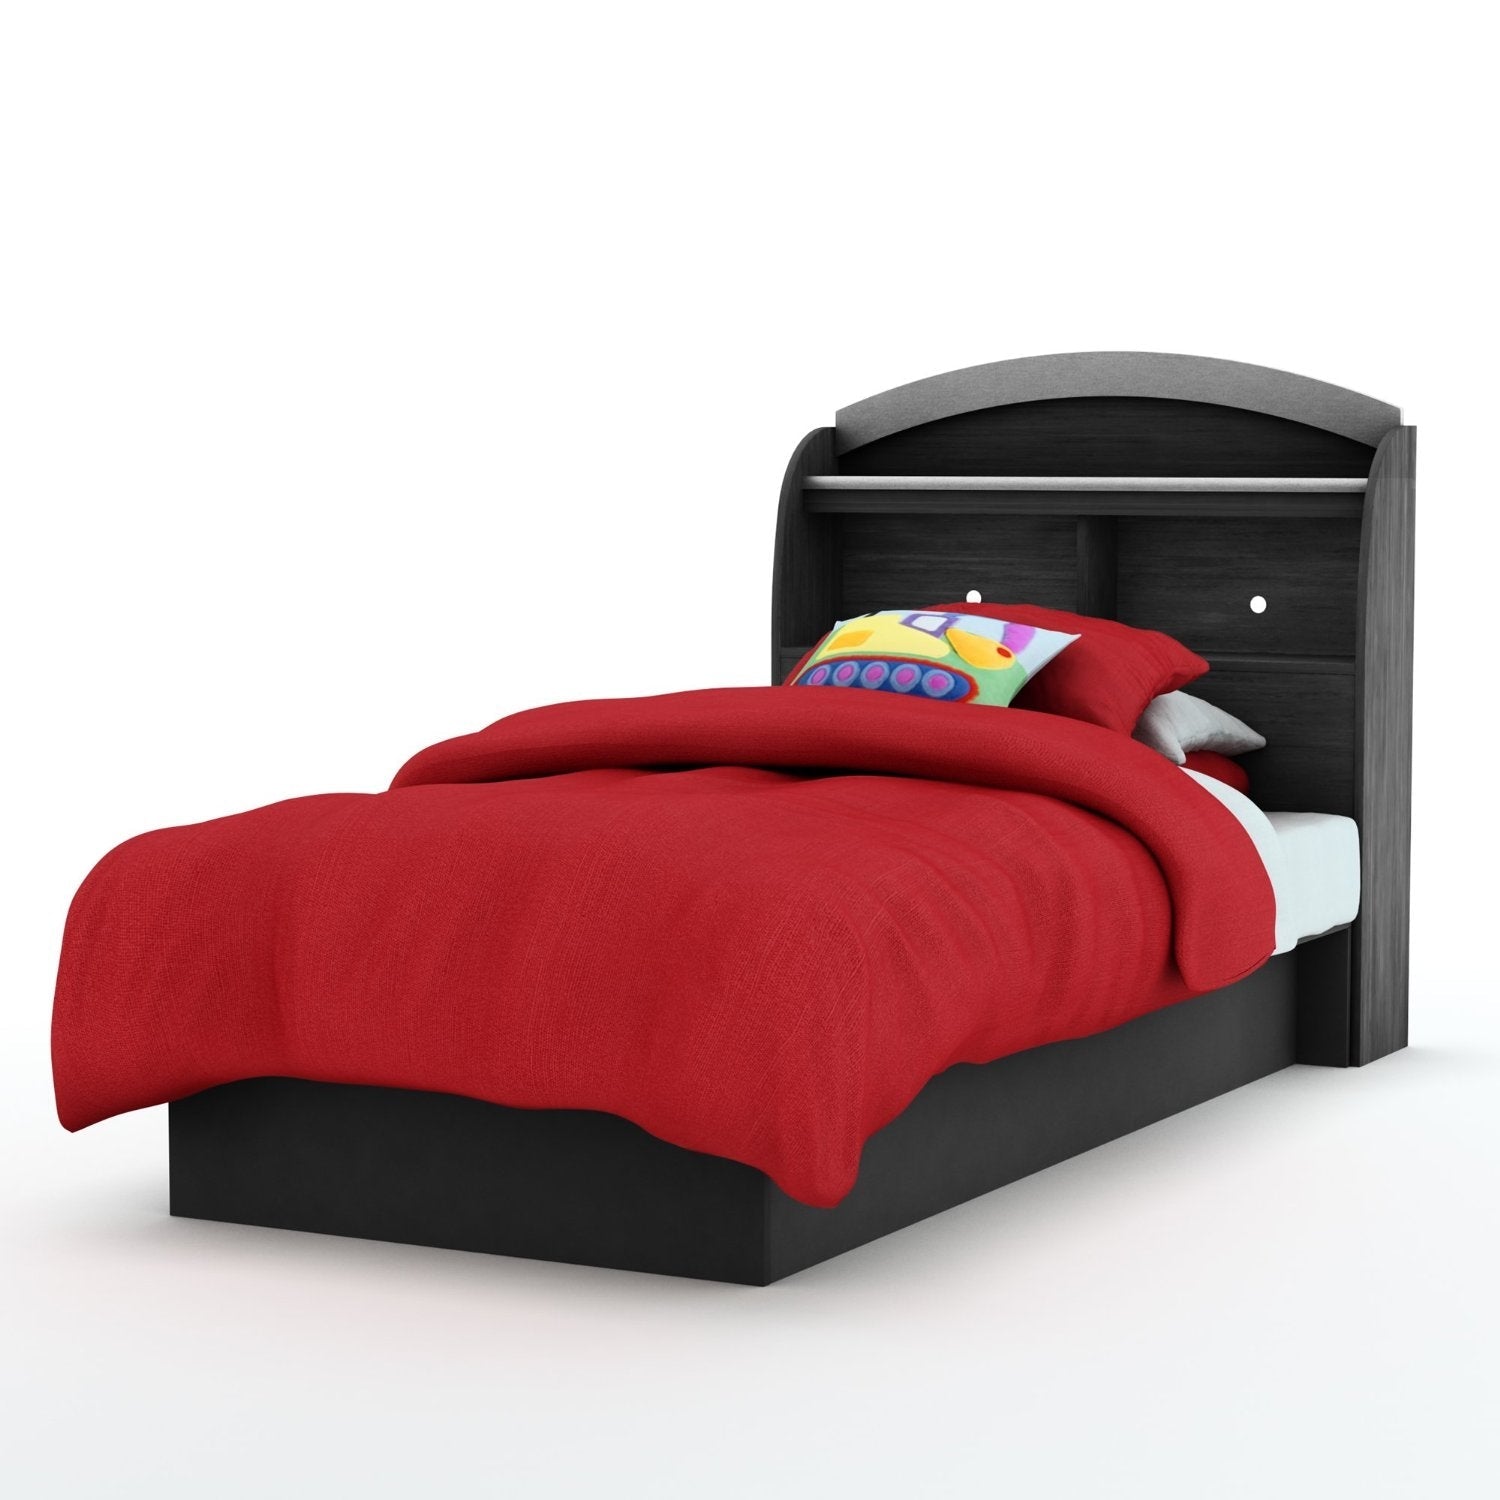 Bedroom > Bed Frames > Platform Beds - Twin Size Platform Bed Frame In Black Wood Finish